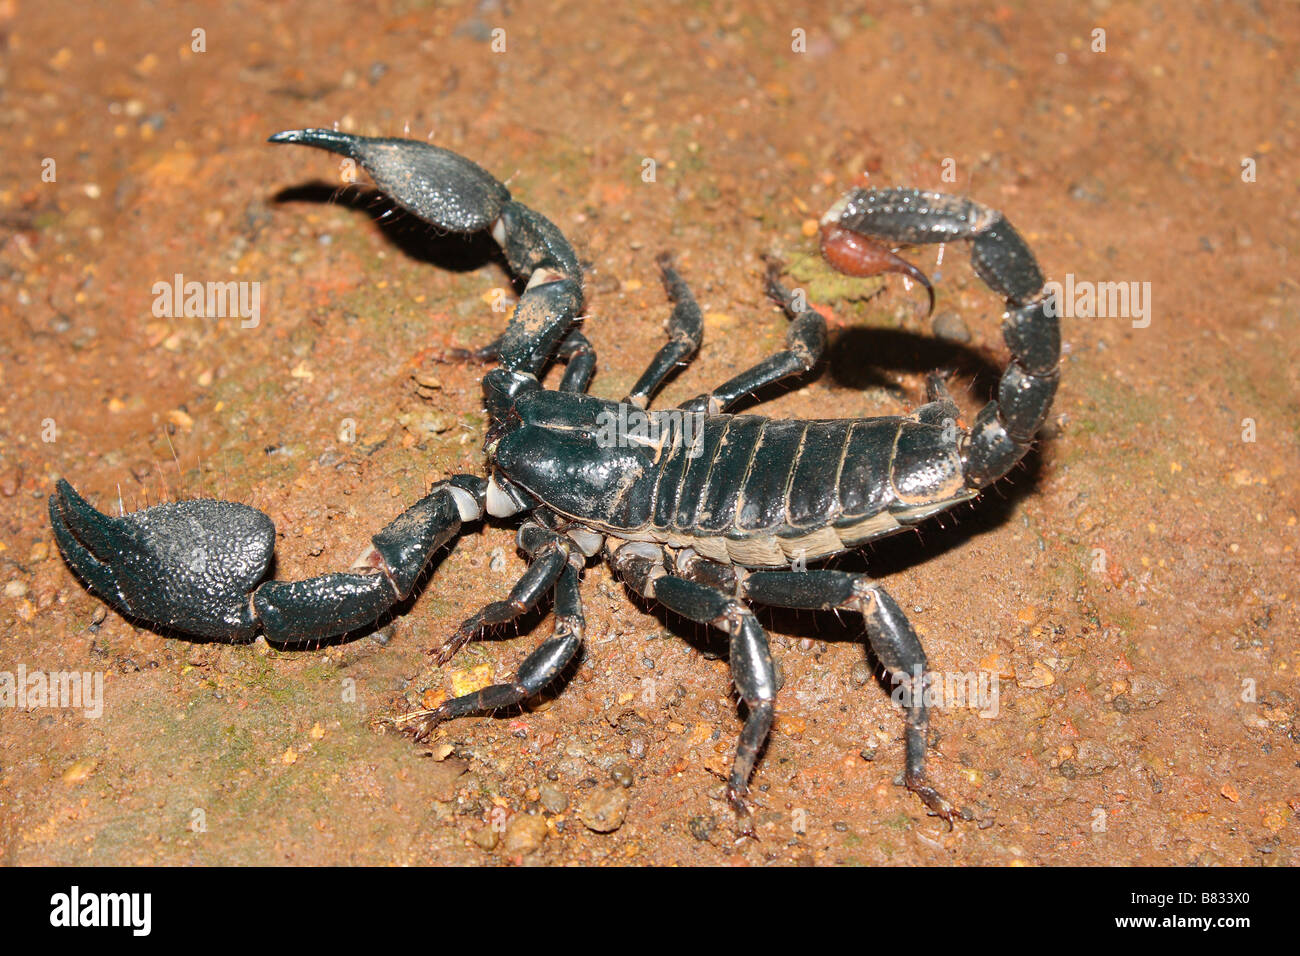 Scorpione. Un grande scorpione nero che vive in cunicoli appiattita. La sua puntura è molto dolorosa. Foto Stock